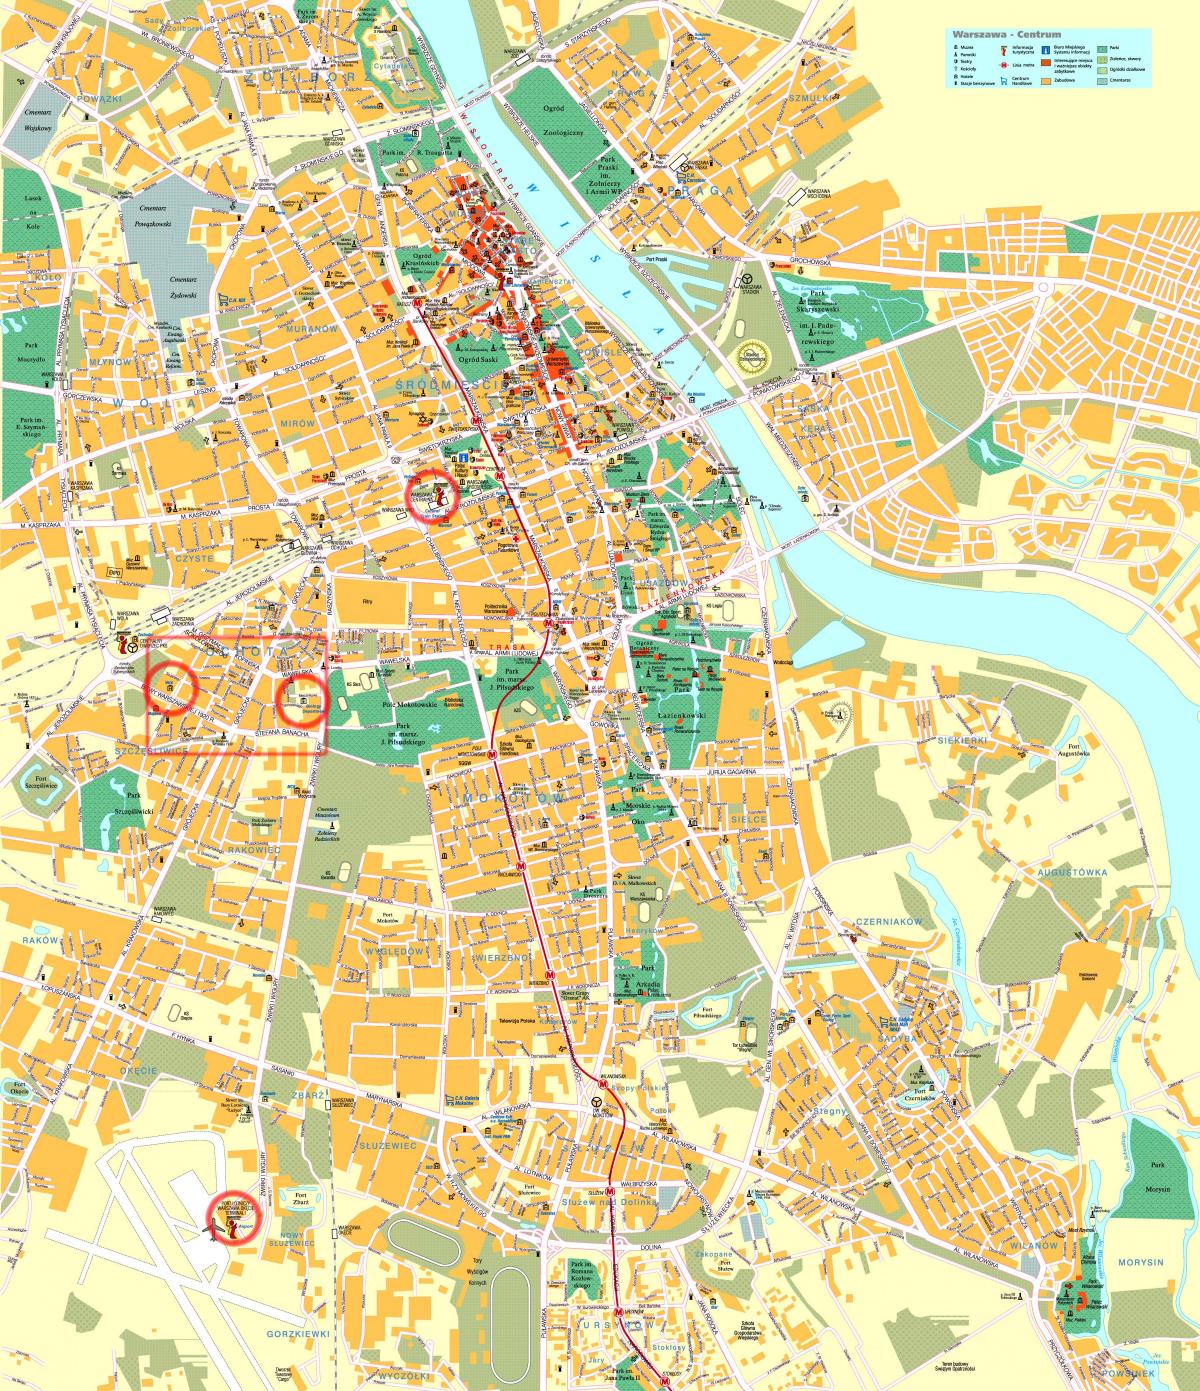 خريطة الشارع من وسط مدينة وارسو